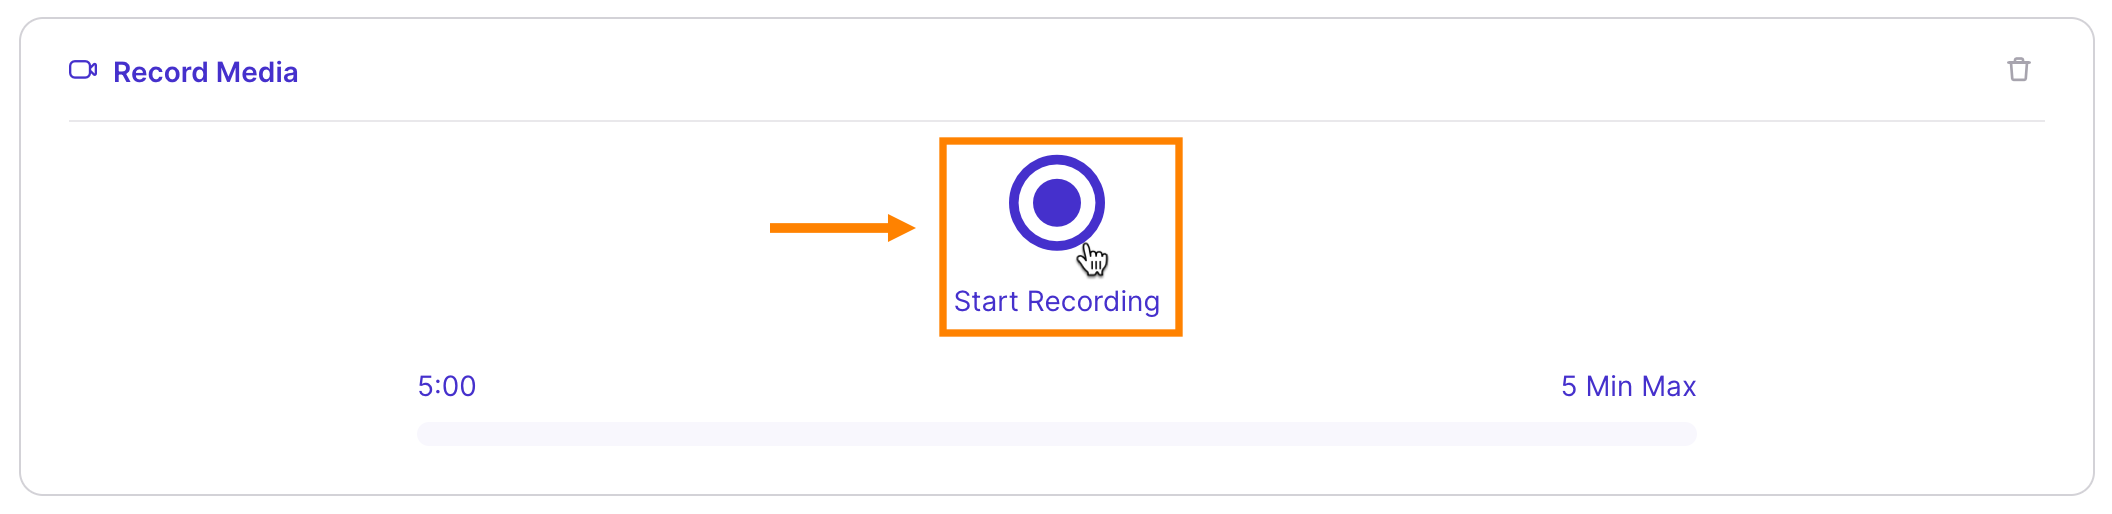 Discussion: Record Media Row Audio Recorder Start Recording Button